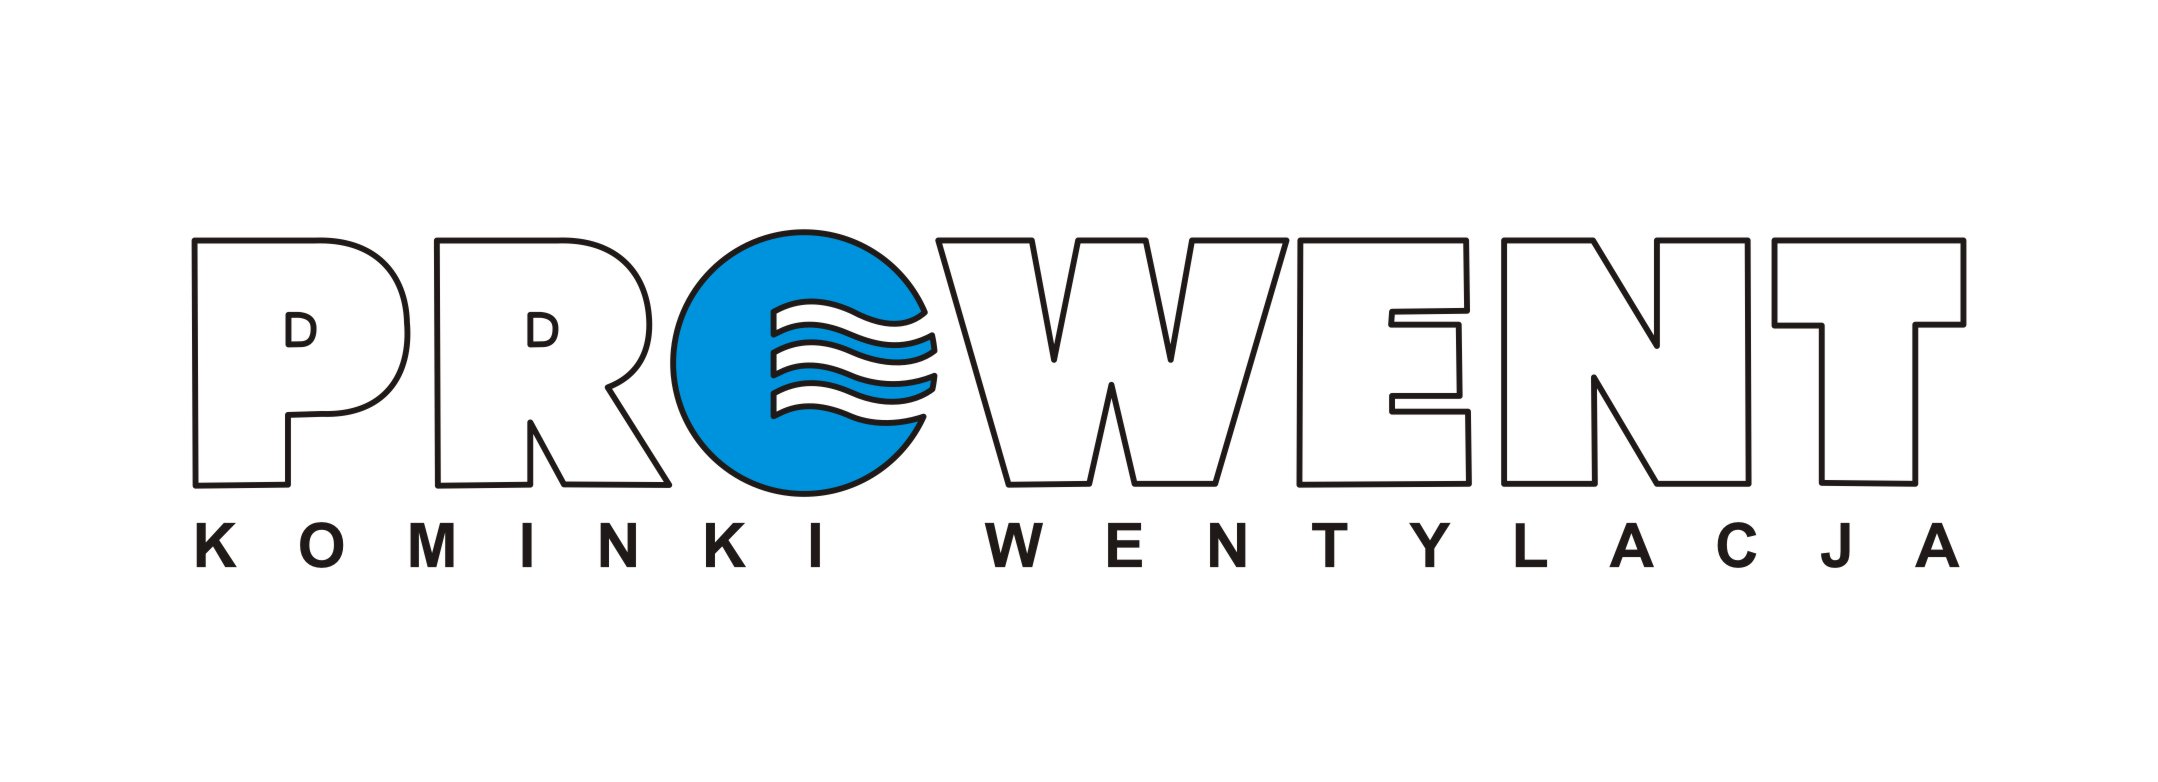 Company logo Prowent Białystok